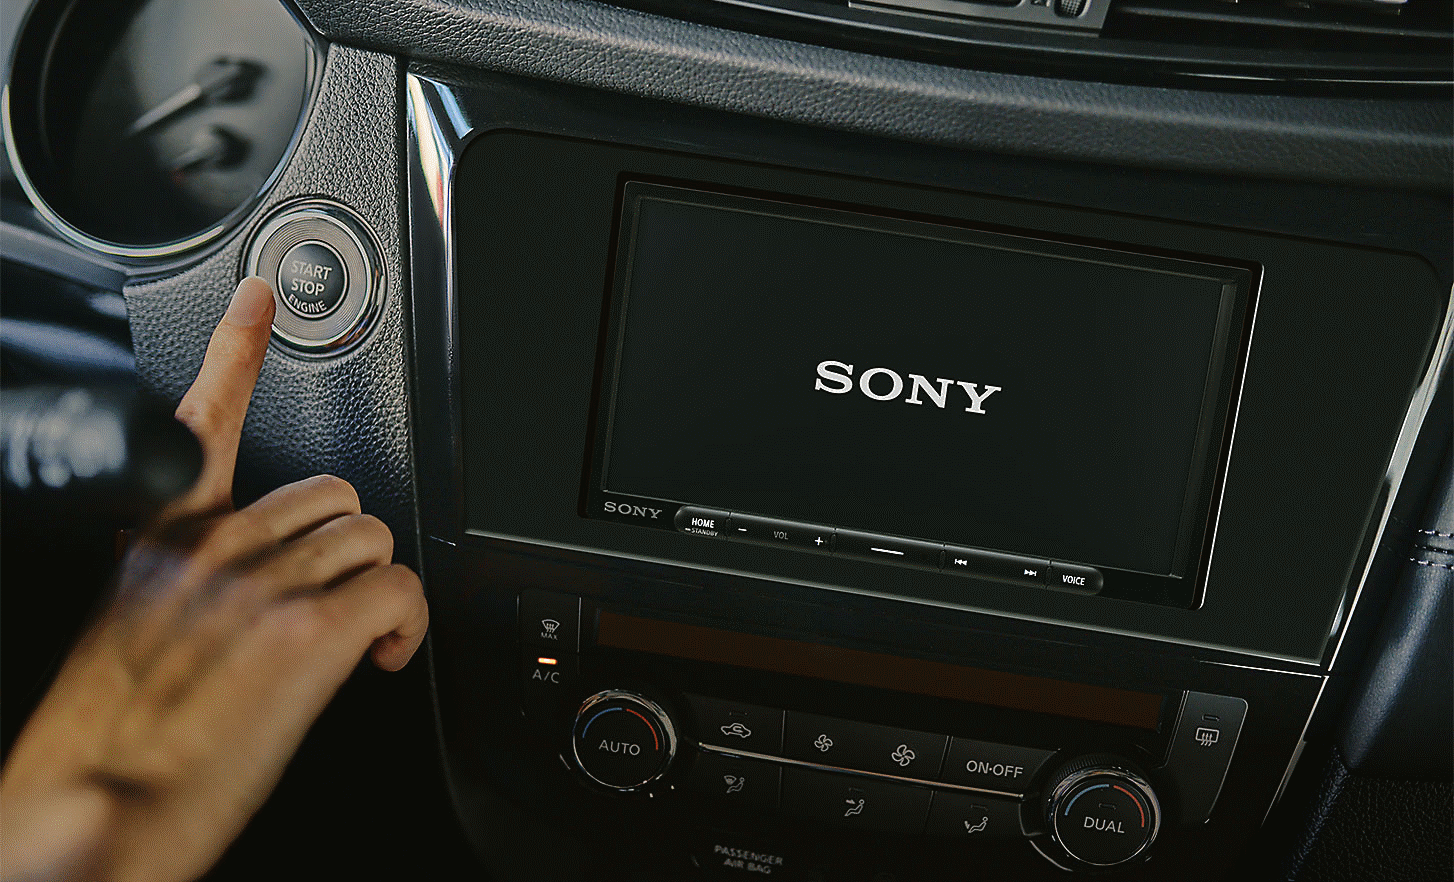 Slika uređaja XAV-AX4050 na nadzornoj ploči s logotipom Sony na zaslonu i osobom koja pritišće gumb za pokretanje automobila